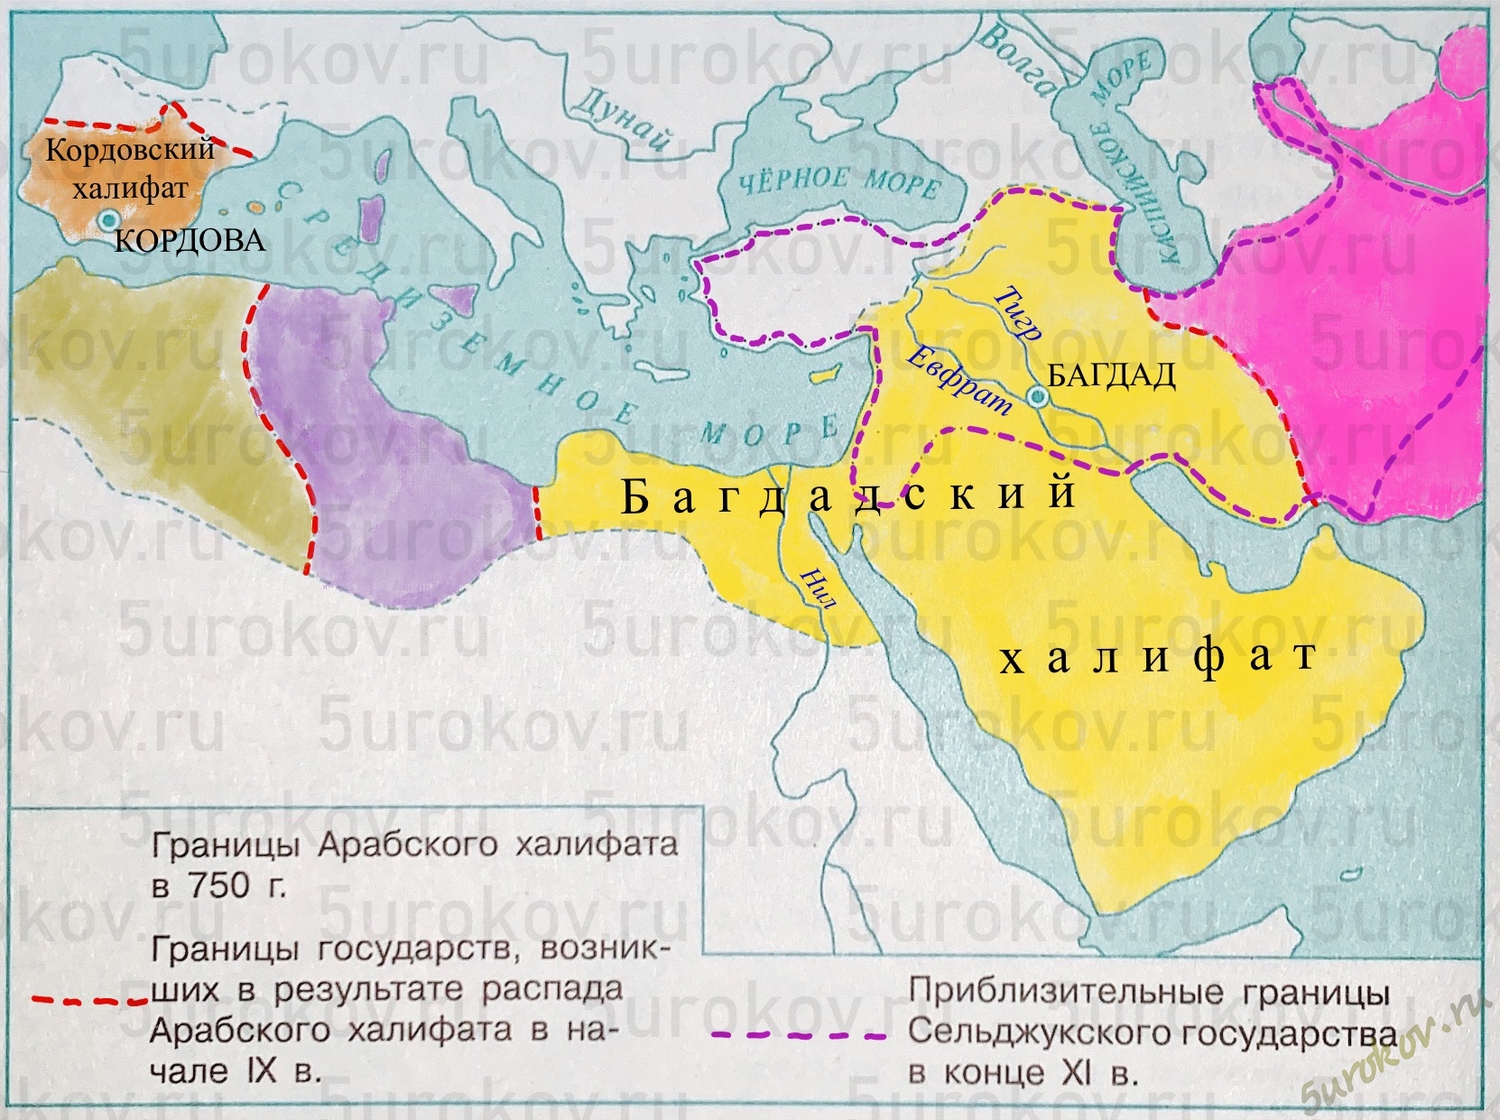 Арабский халифат багдад на карте. Распад арабского халифата карта. Территория арабского халифата к 750 году. Карта арабский Багдадский халифат. Граница арабского халифата к 750 году.